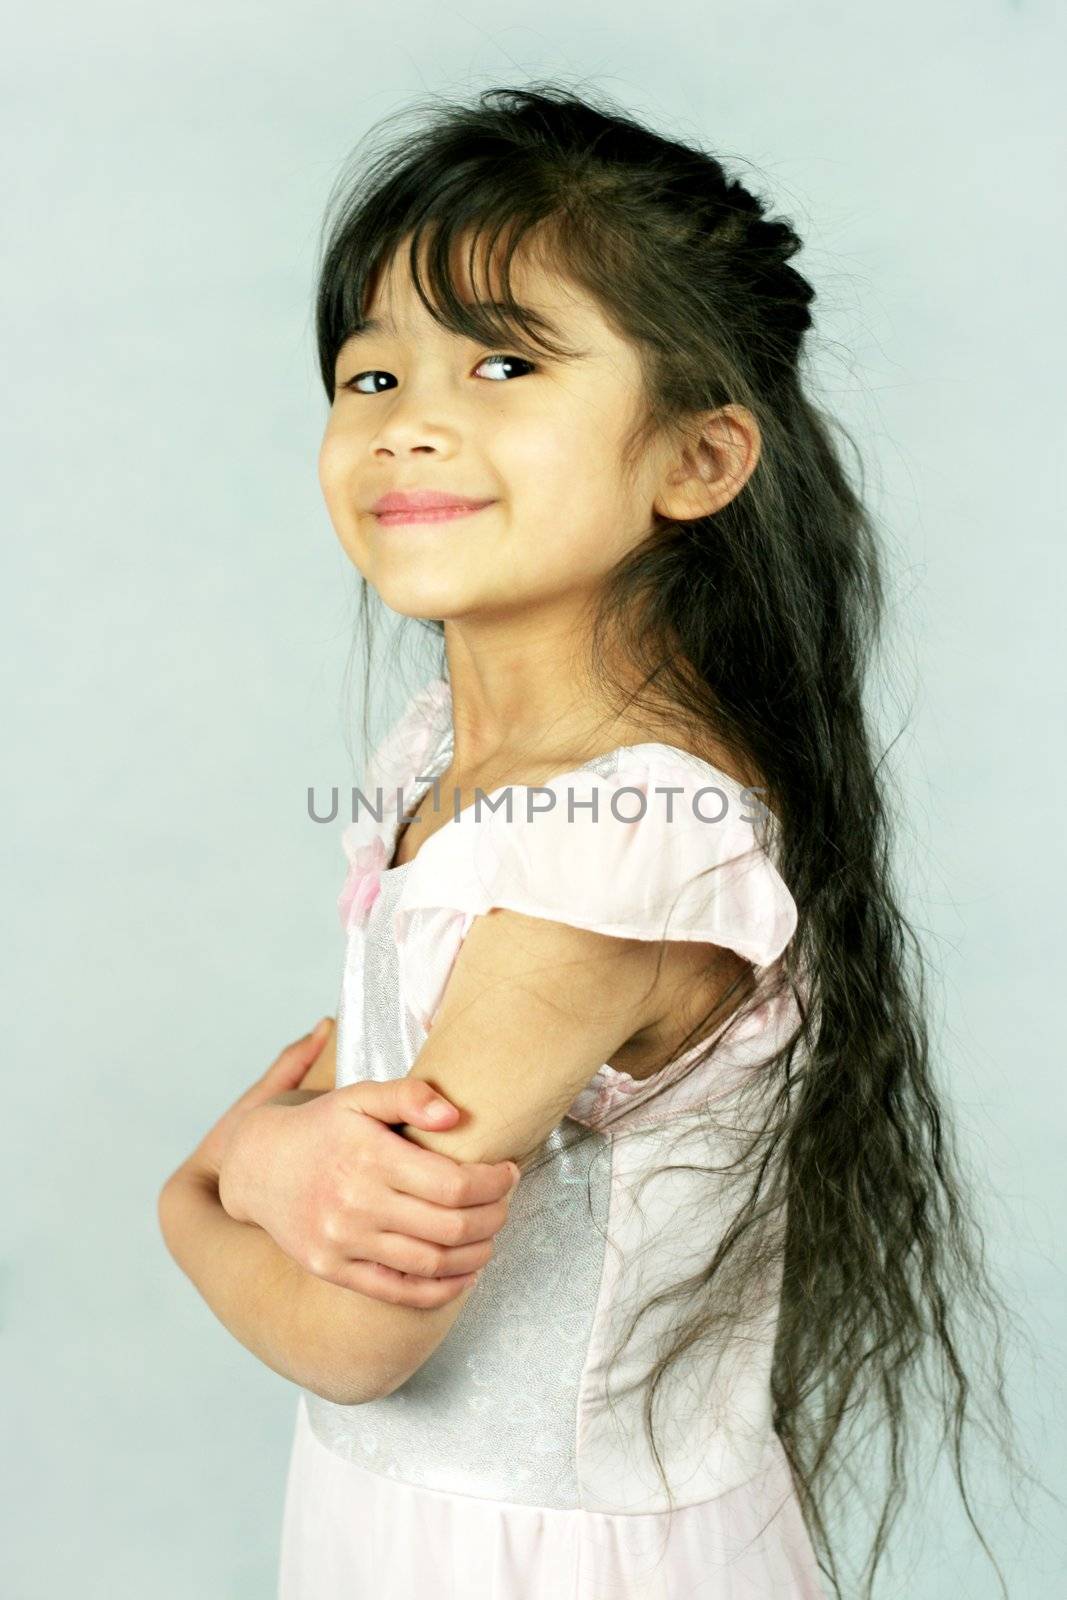 Little confident girl, part Scandinavian,Asian descent by jarenwicklund